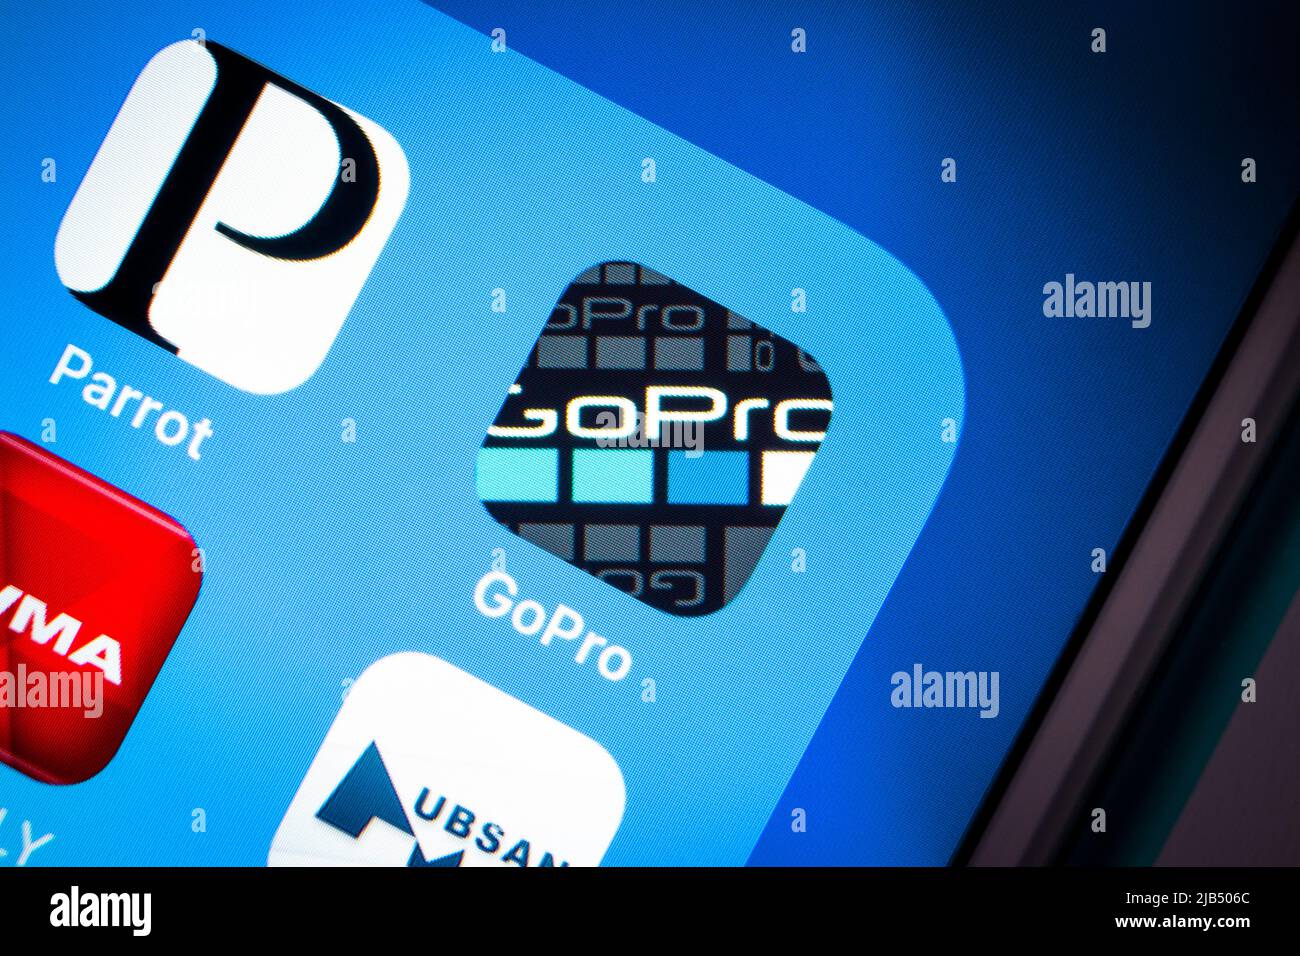 GoPro App, ein US-Unternehmen, das 2002 von Nick Woodman gegründet wurde, auf iOS. GoPro stellt Action-Cam her und entwickelt mobile Apps und Videobearbeitungssoftware. Stockfoto